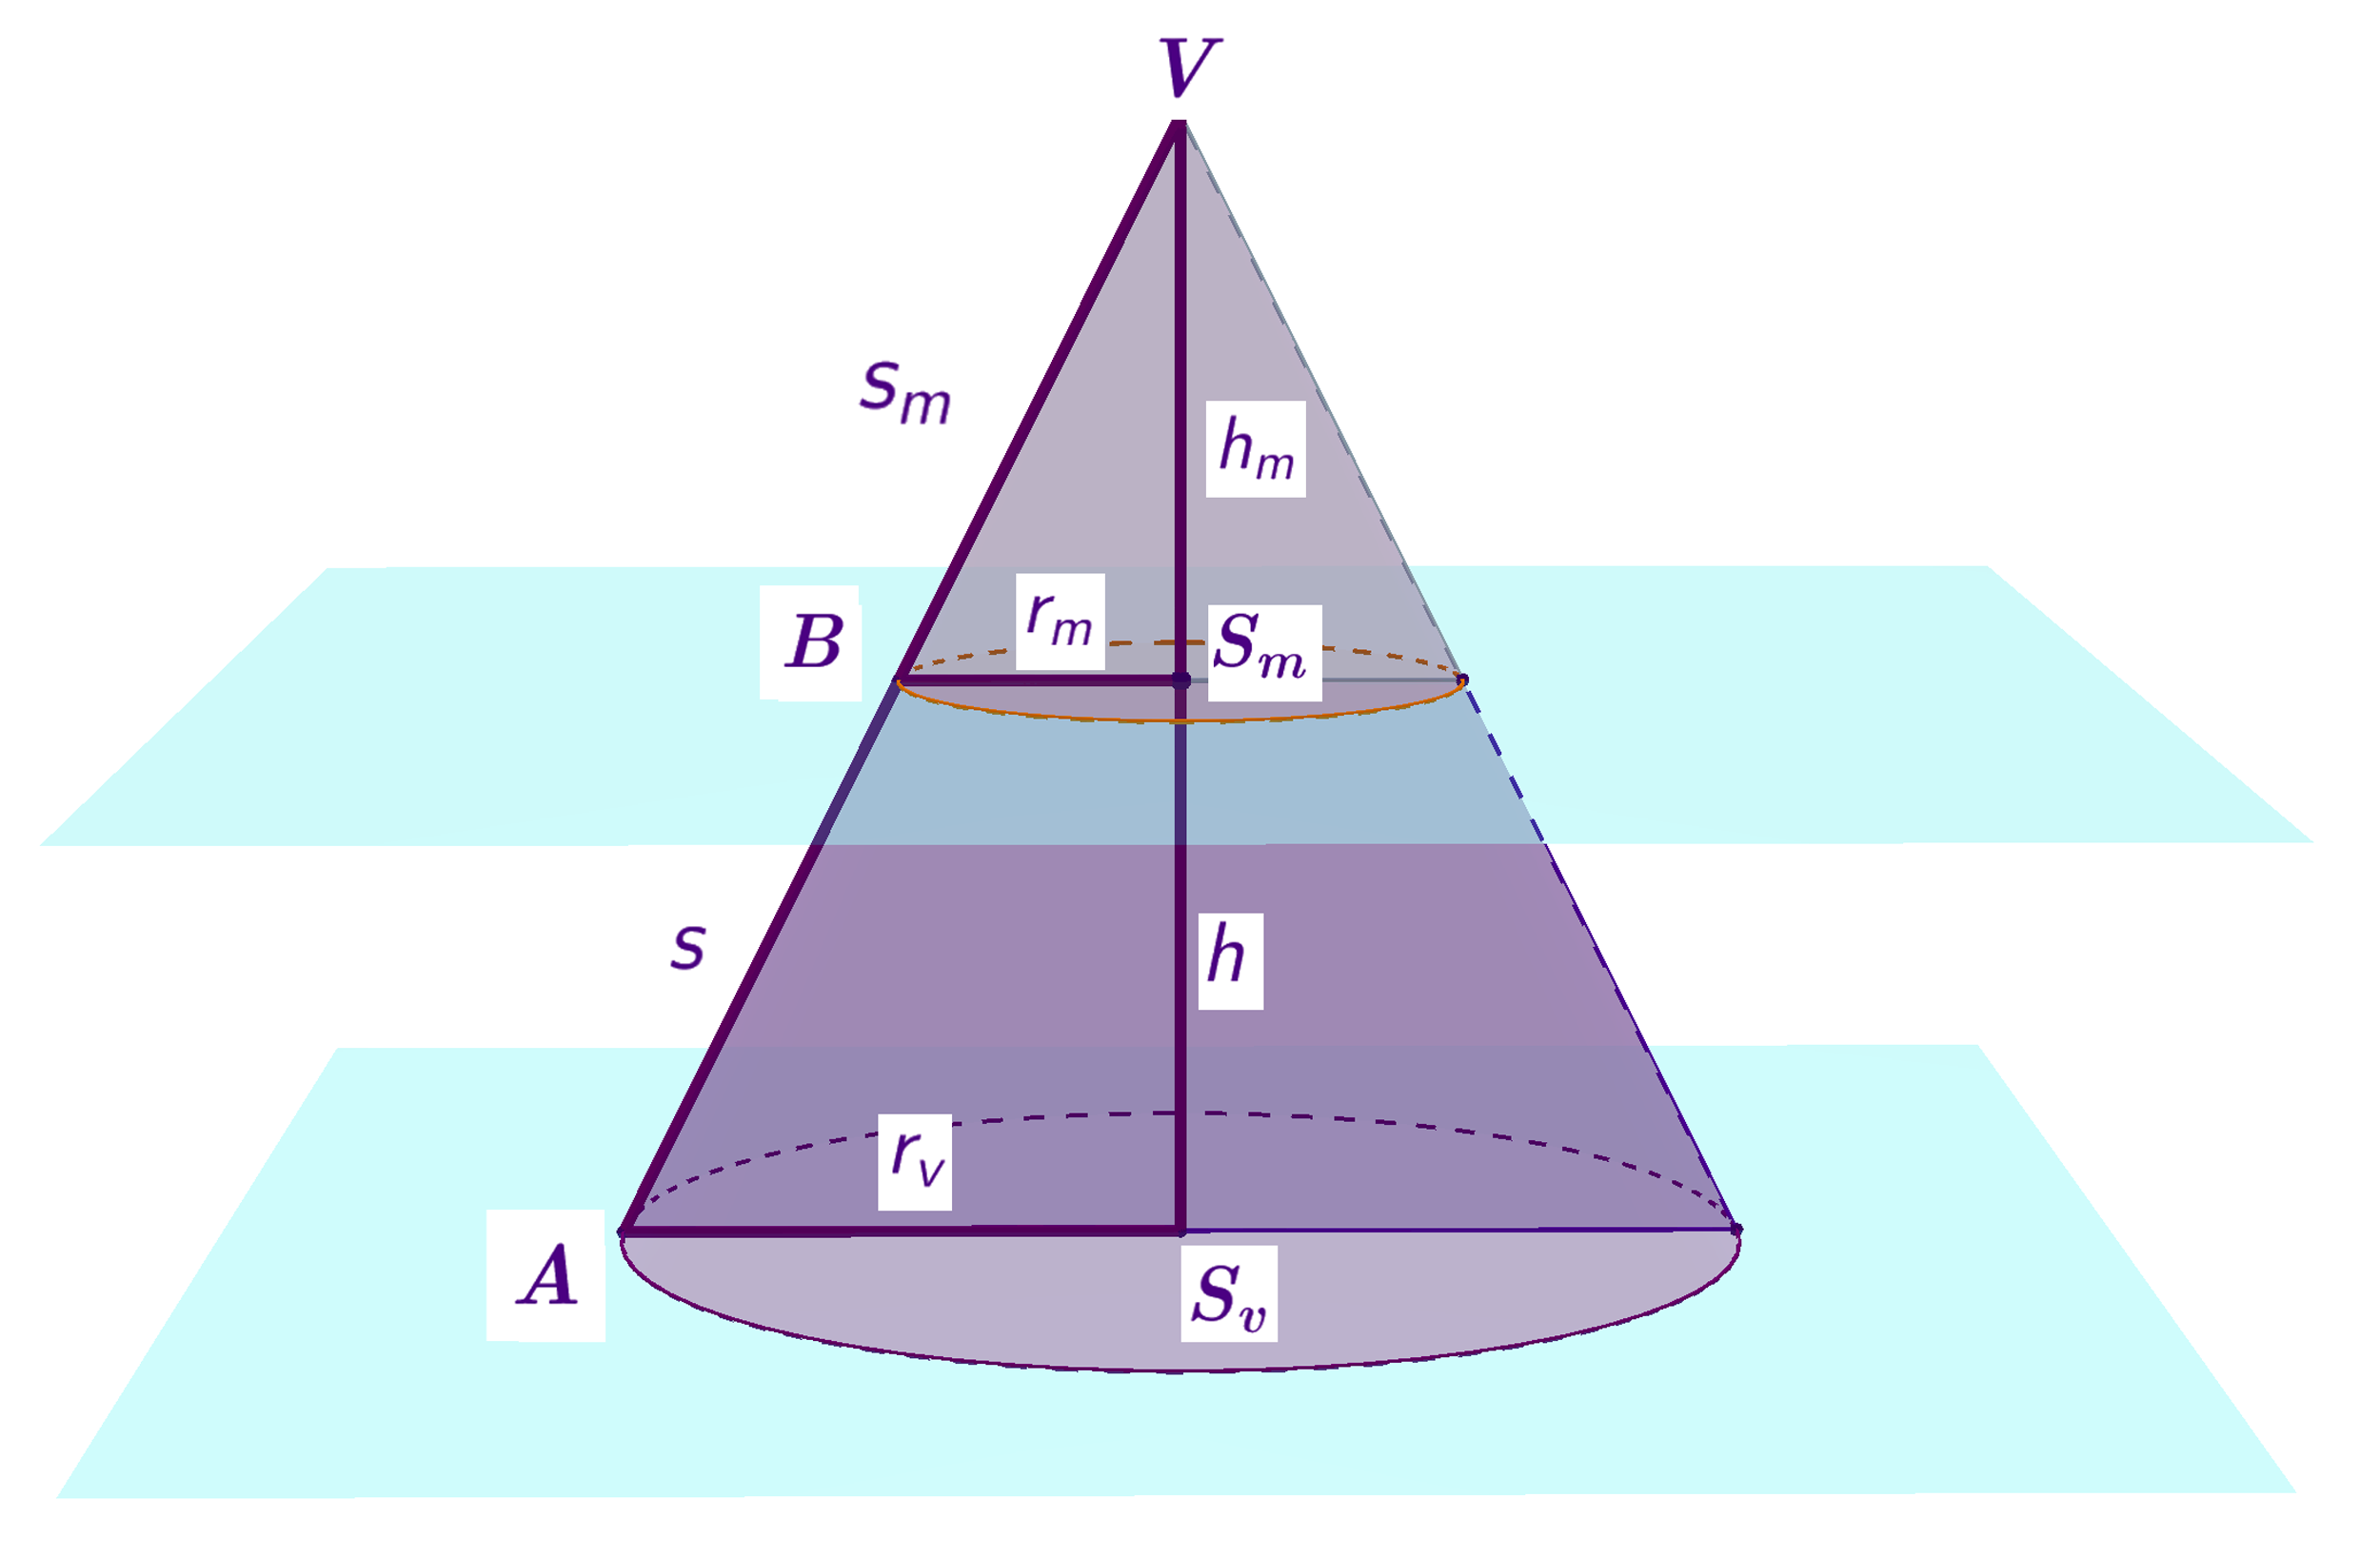 Dopunjena krnja piramida s istaknutim sličnim trokutima